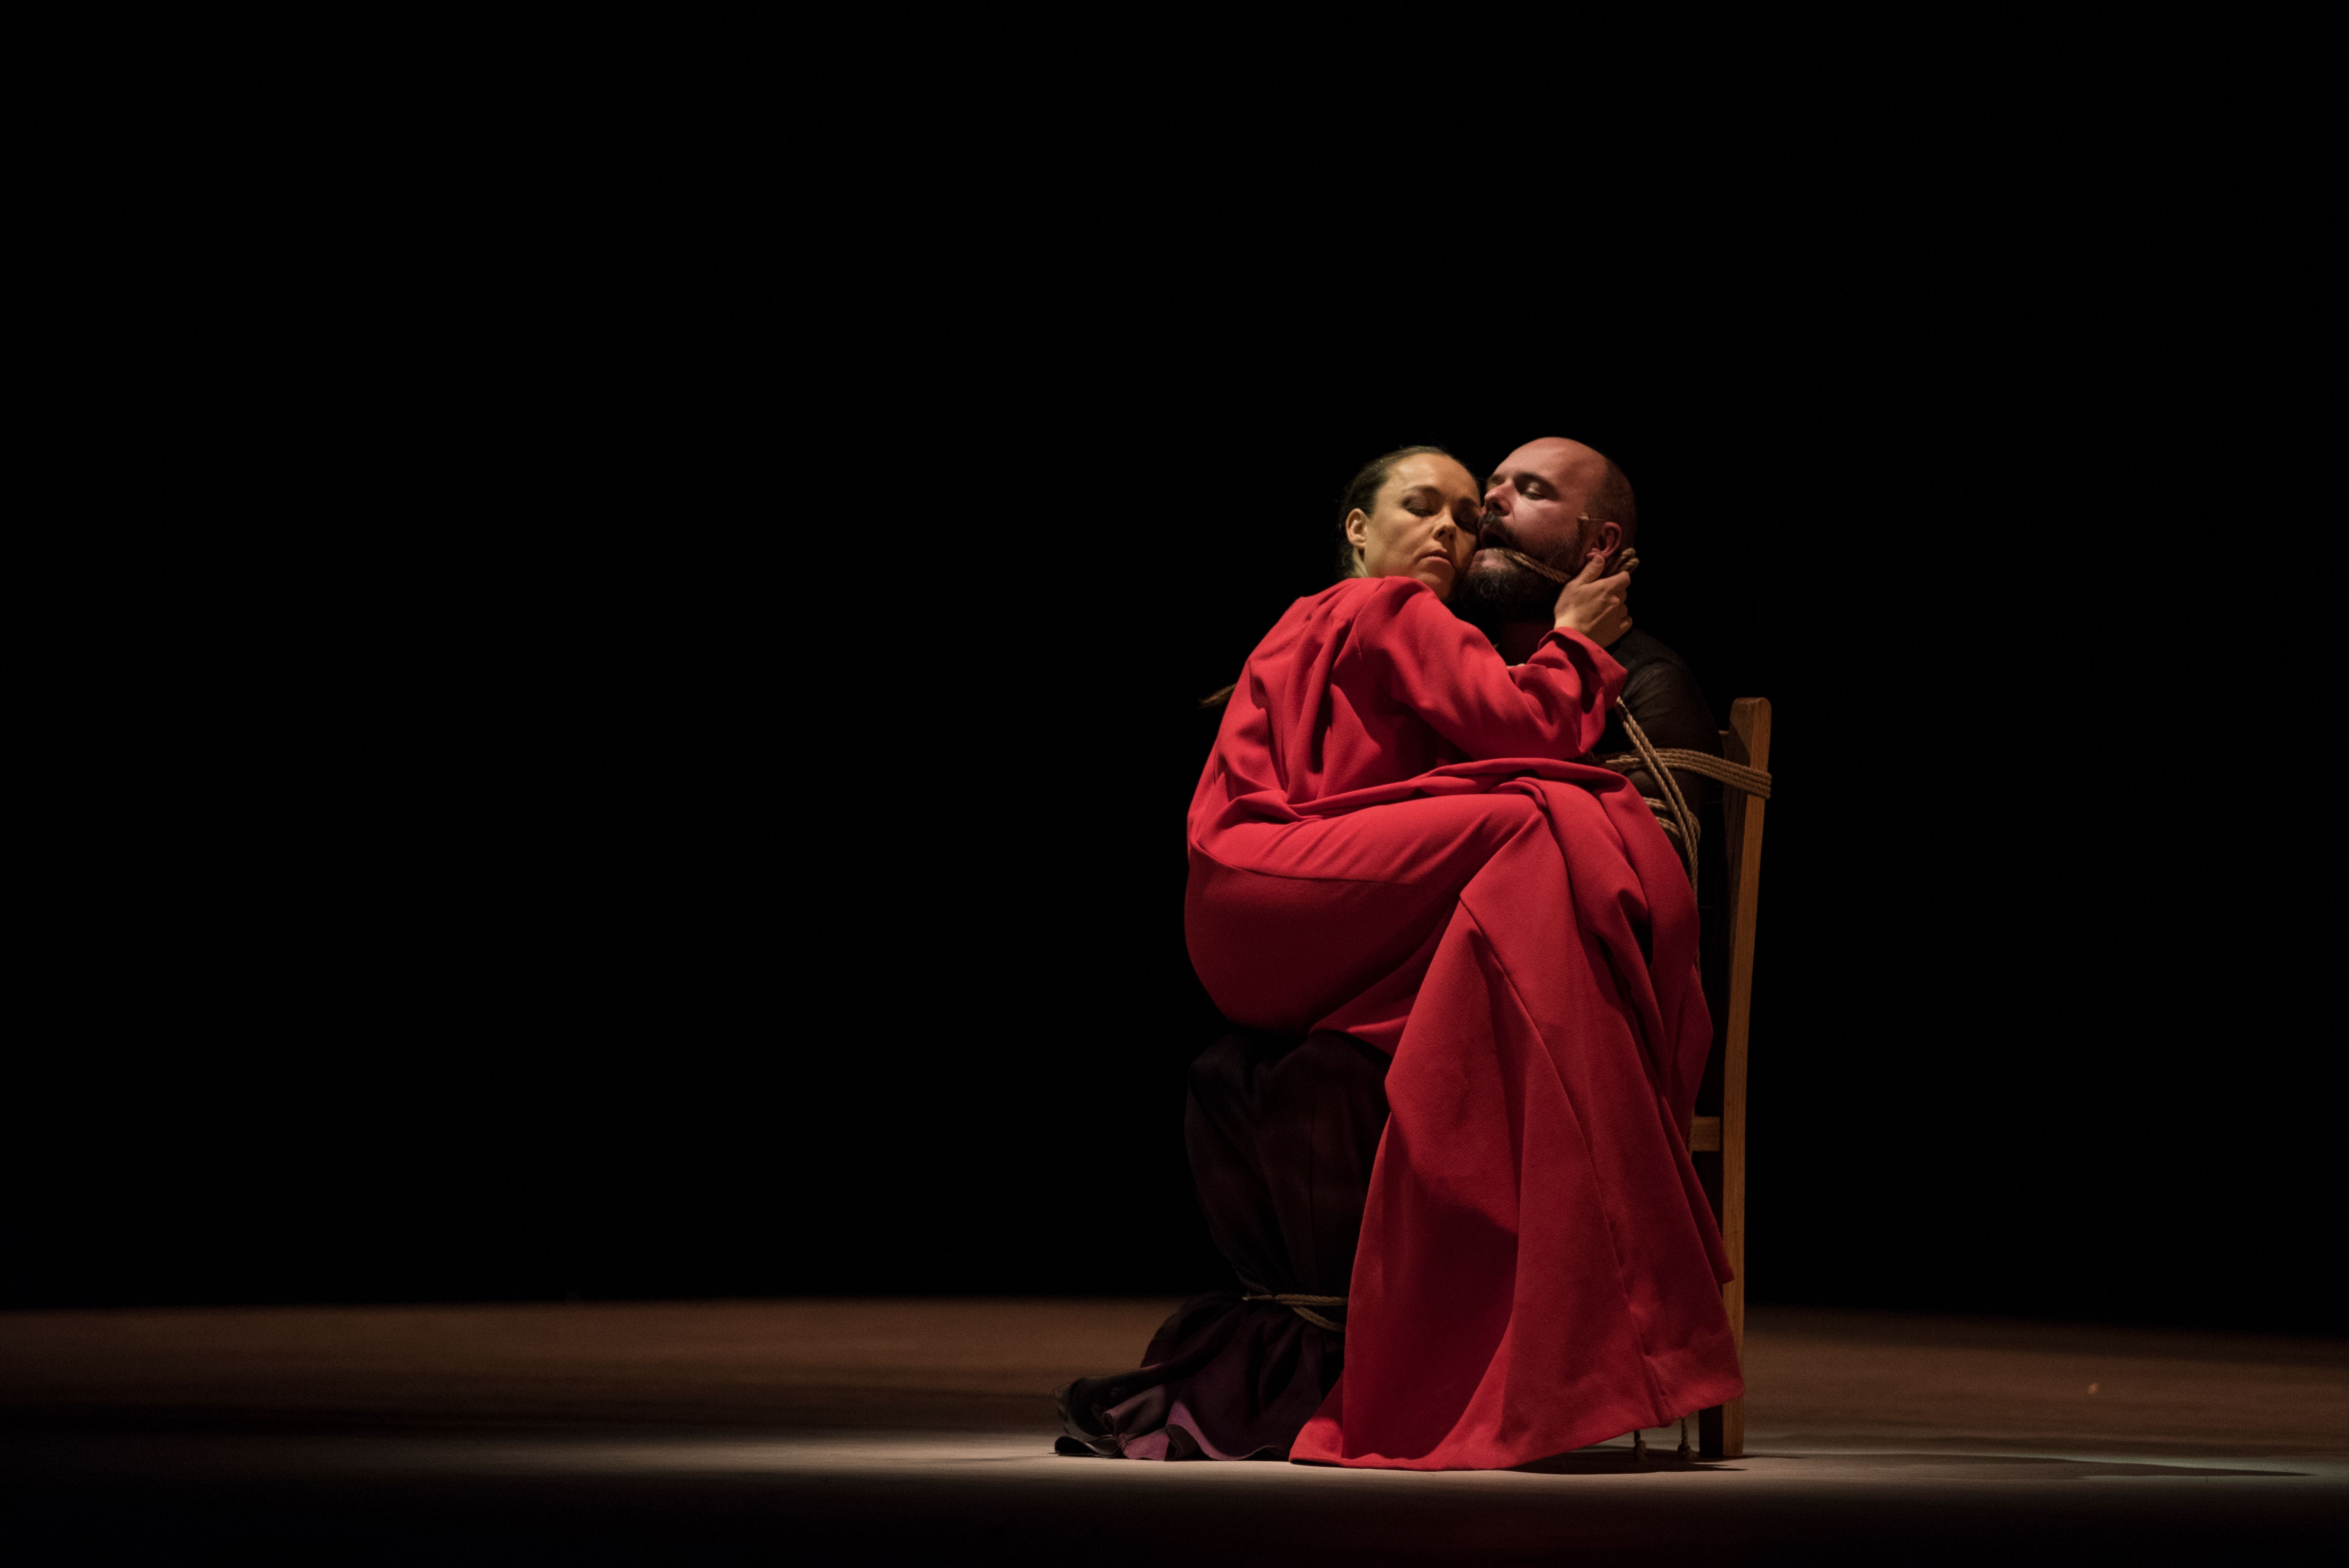 Rocío Molina y Niño de Elche, en un momento de 'Carnación', que presentaron el pasado 30 de septiembre en la Bienal de Flamenco de Sevilla.